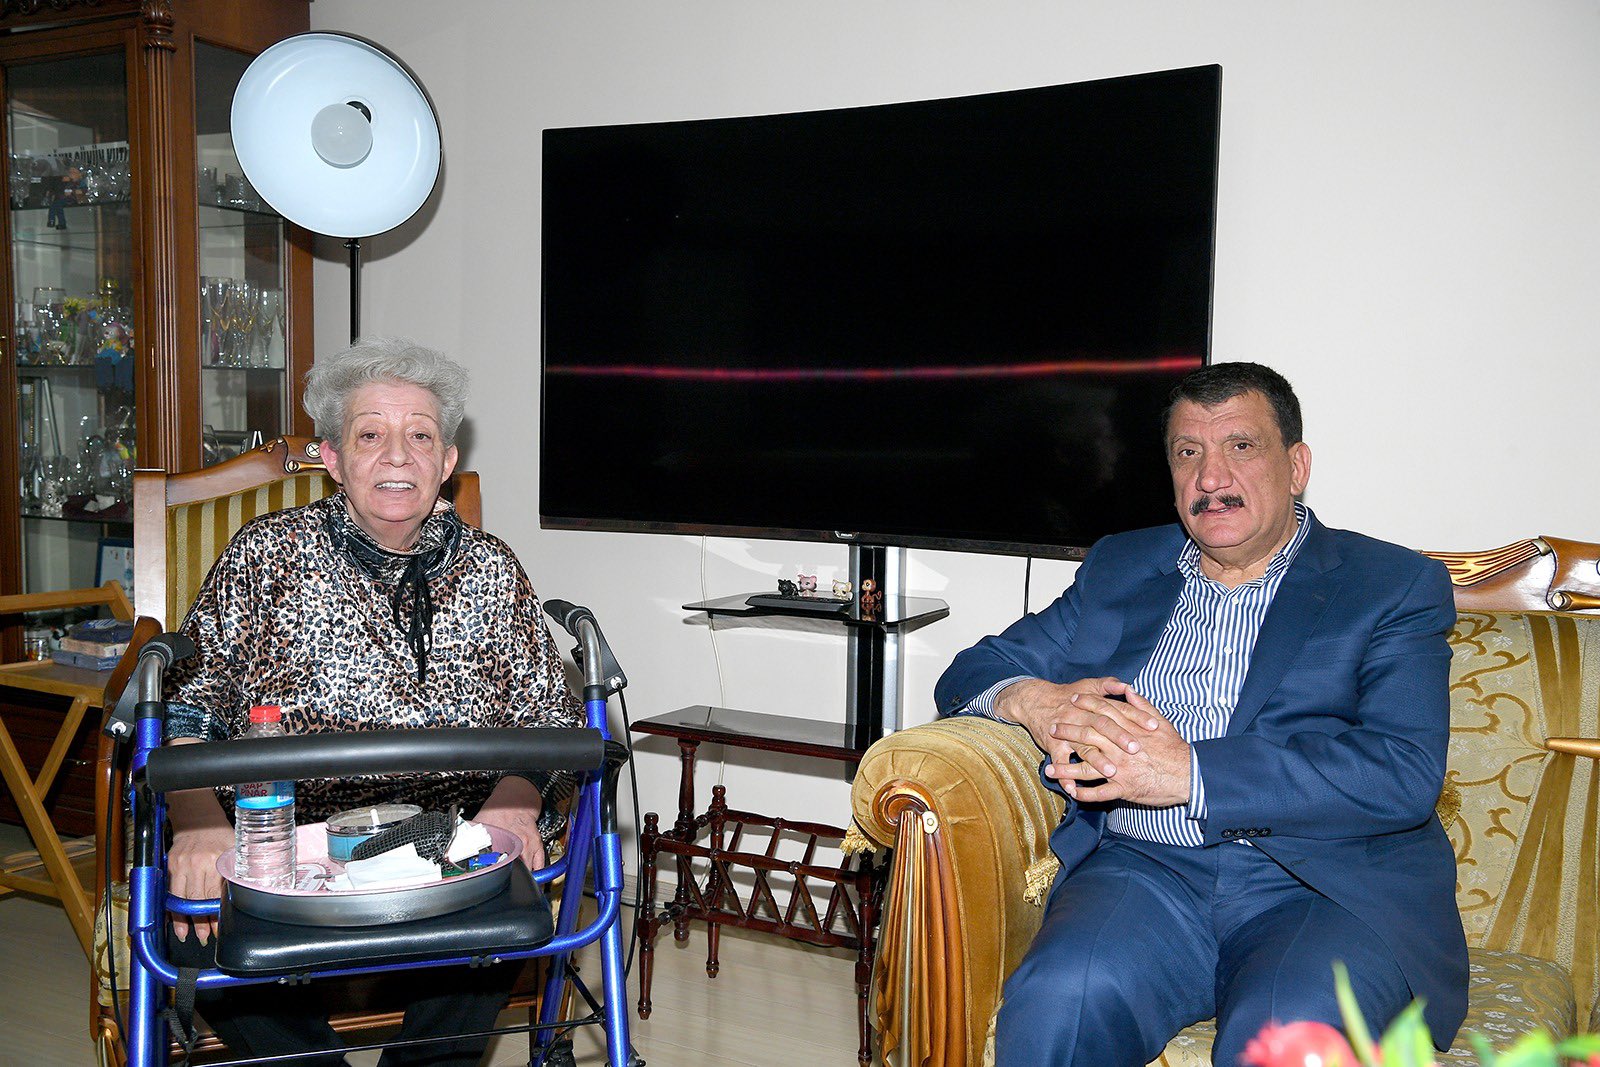 Malatya Büyükşehir Belediye Başkanı Selahattin Gürkan, Malatya eski Belediye Başkanı Seyhan Semercioğlu’nun eşi Şahika Semercioğlu’nu Ramazan Bayramı nedeniyle evinde ziyaret etti.